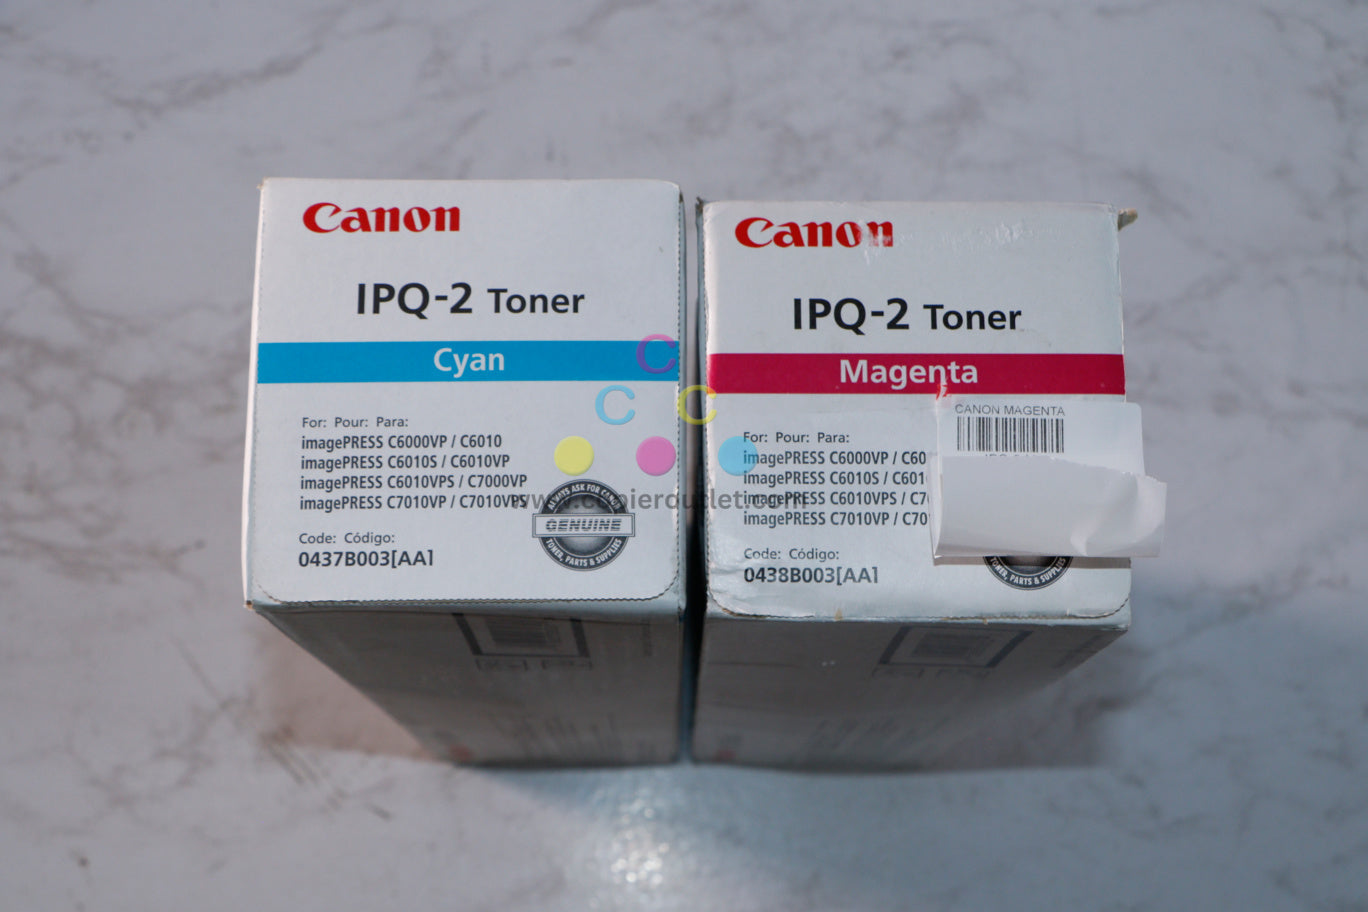 2 New OEM Canon imagePRESS C6000, C6010, C7000, C7010 CM Toner Cartridges IPQ-2